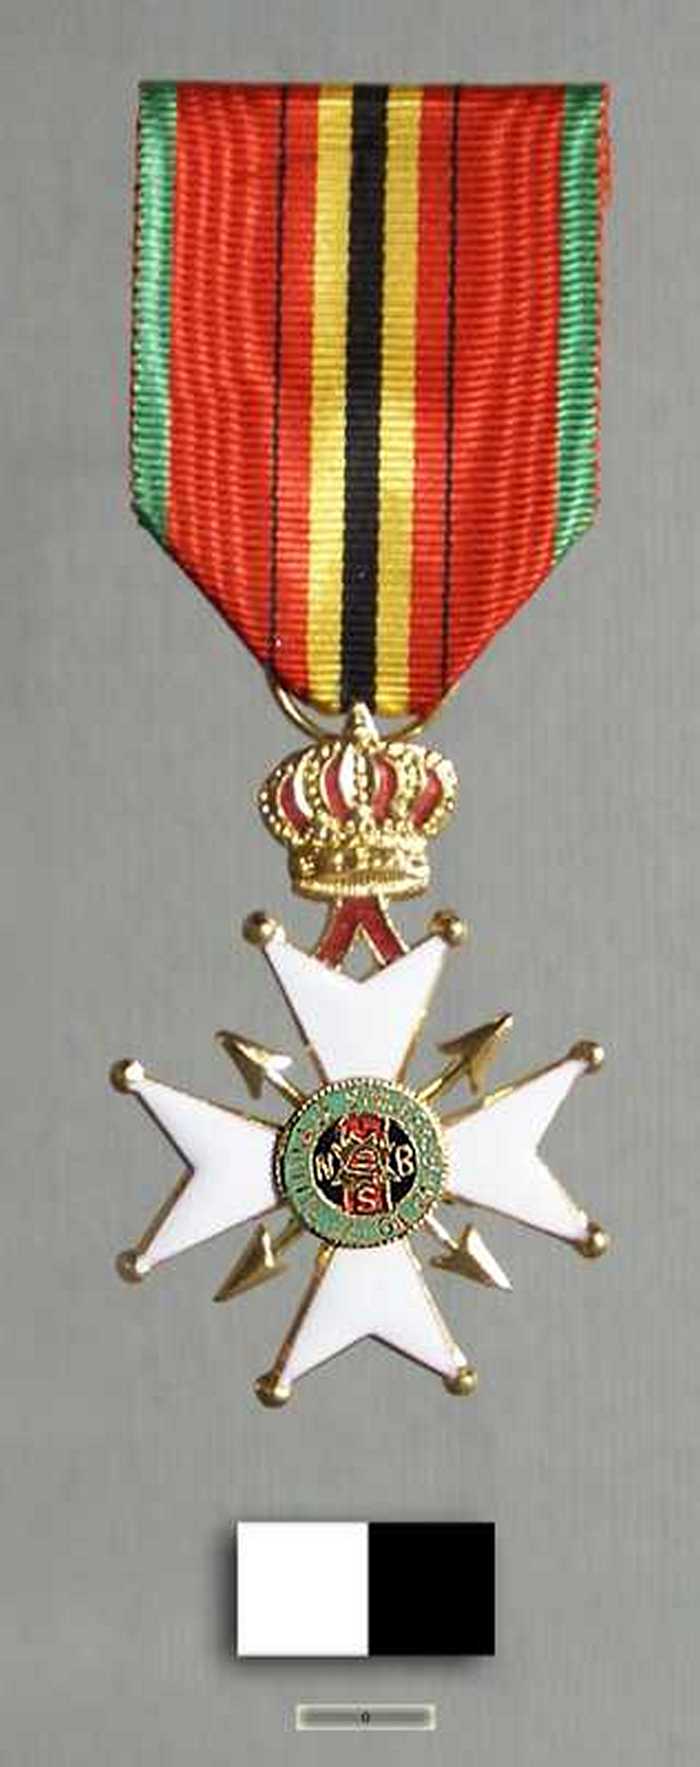 Medaille NATIONALE STRIJDERSBOND BELGIE